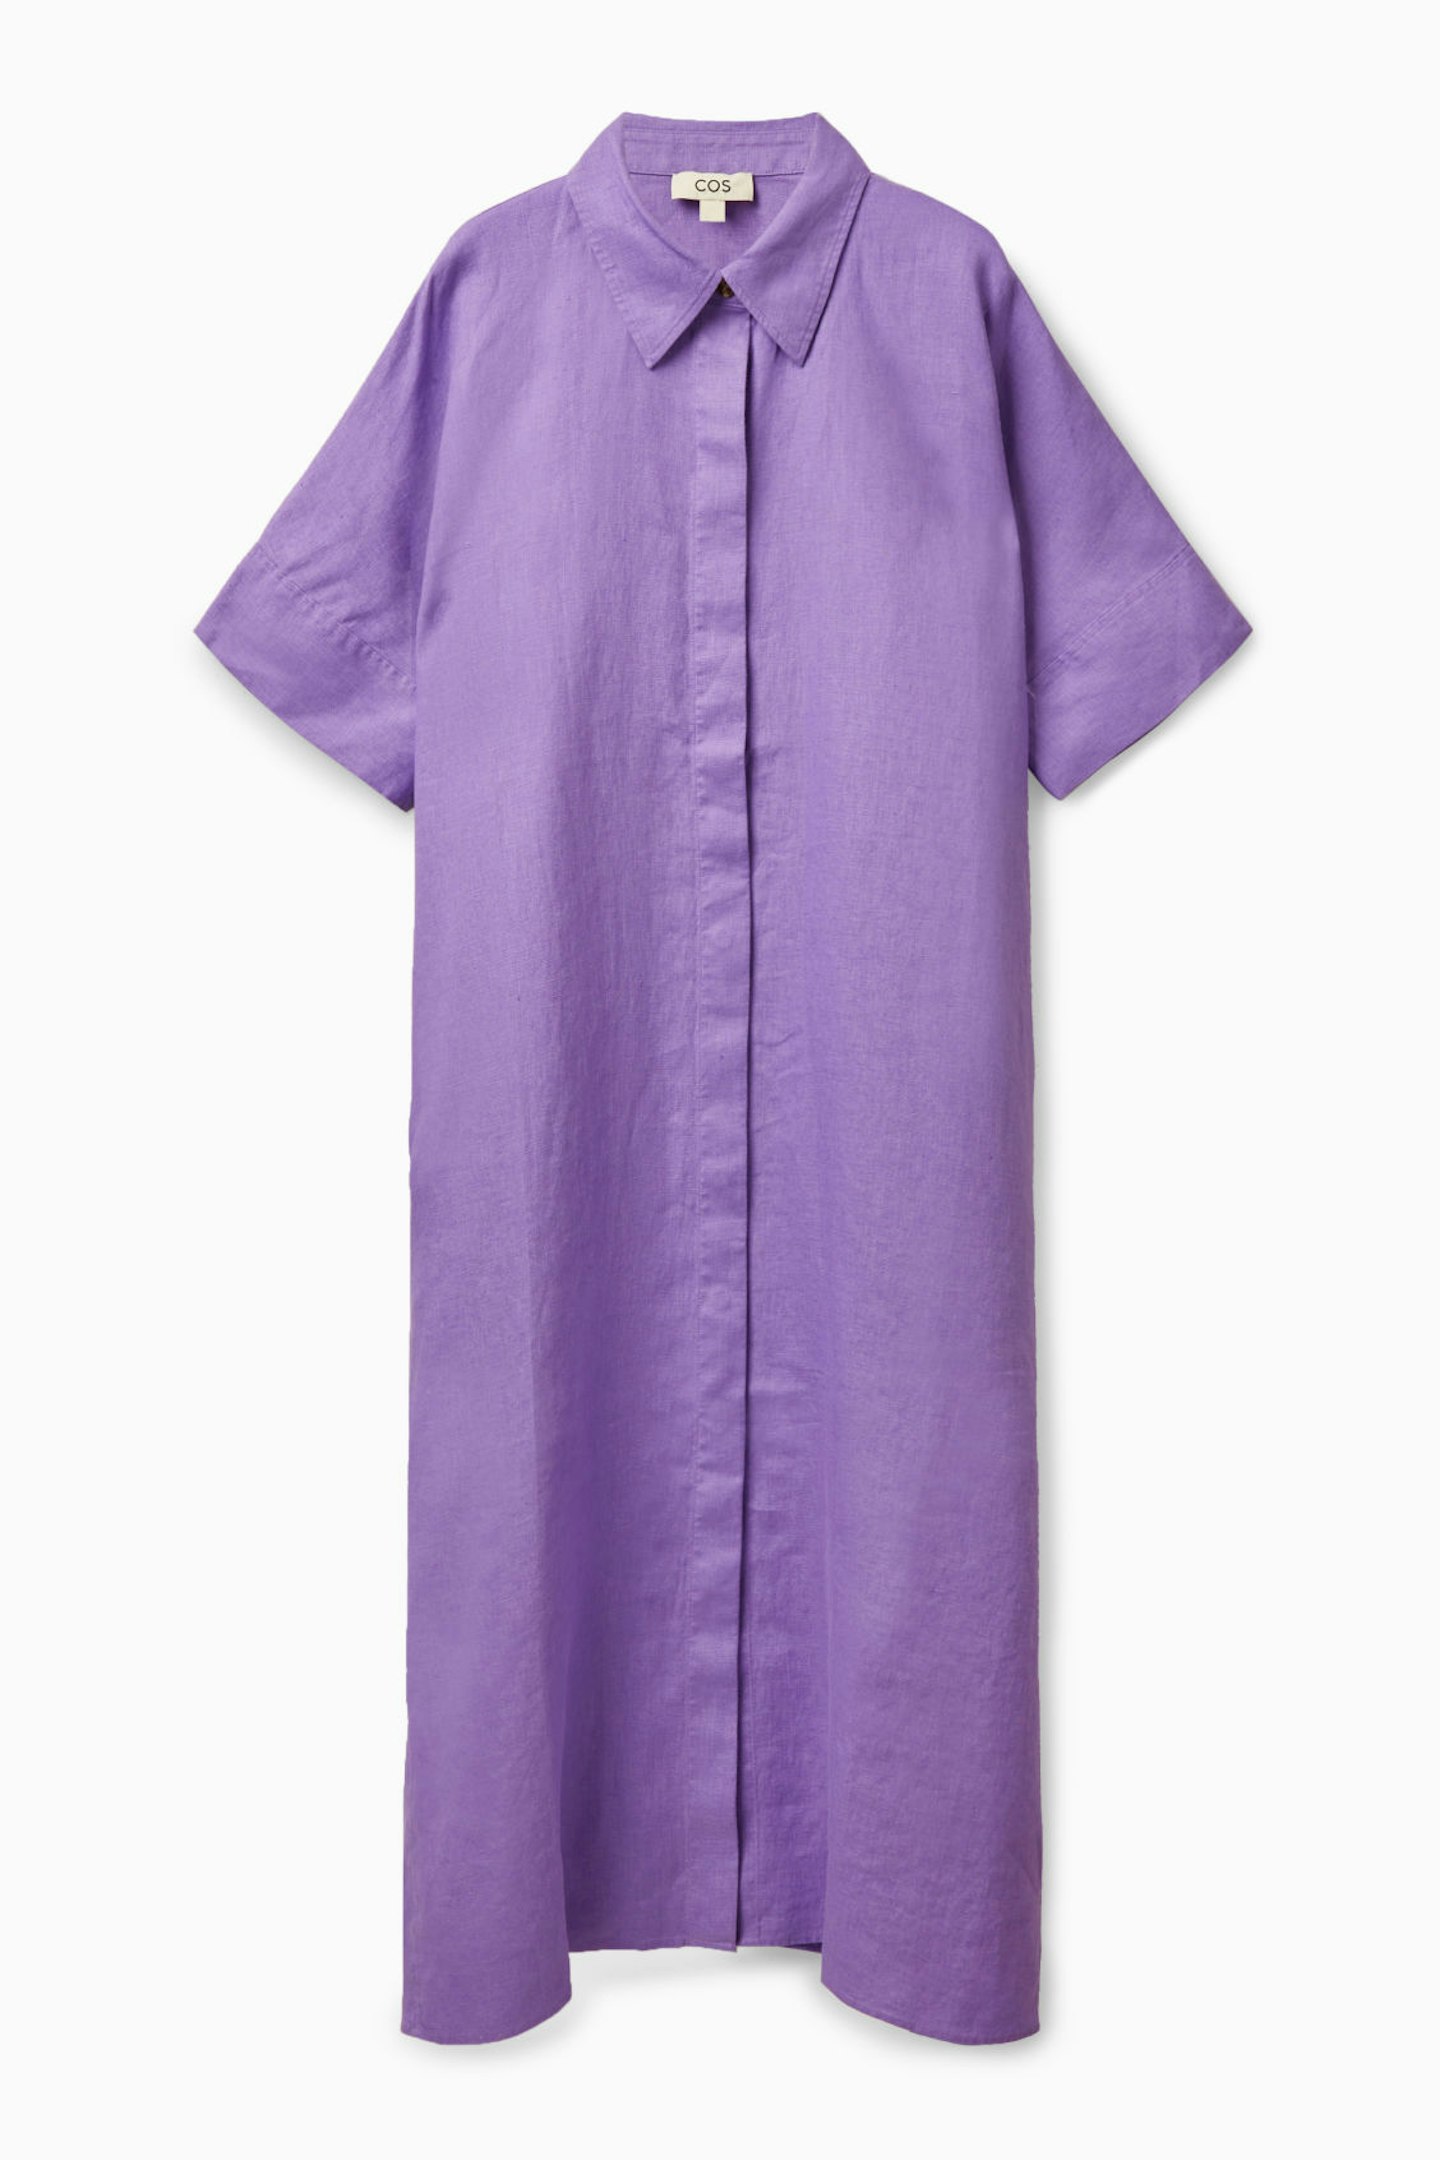 COS, Relaxed Linen Shirt Dress, £79